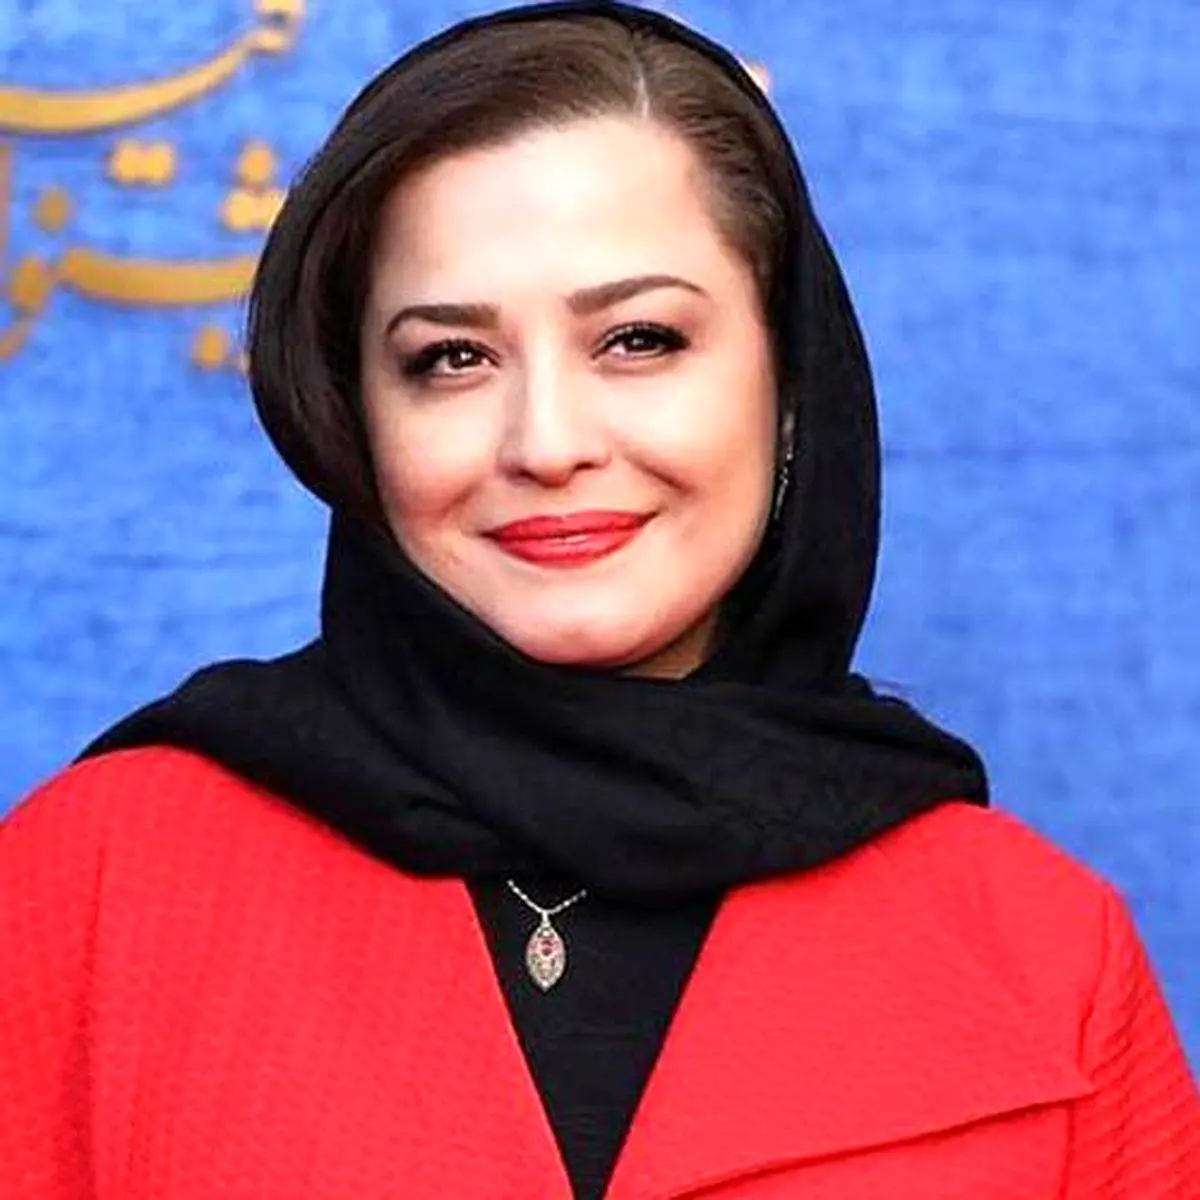 سوتی مهراوه شریفی نیا و خواهرش در برنامه زنده | مهراوه شریفی نیا راز خواهرش را فاش کرد